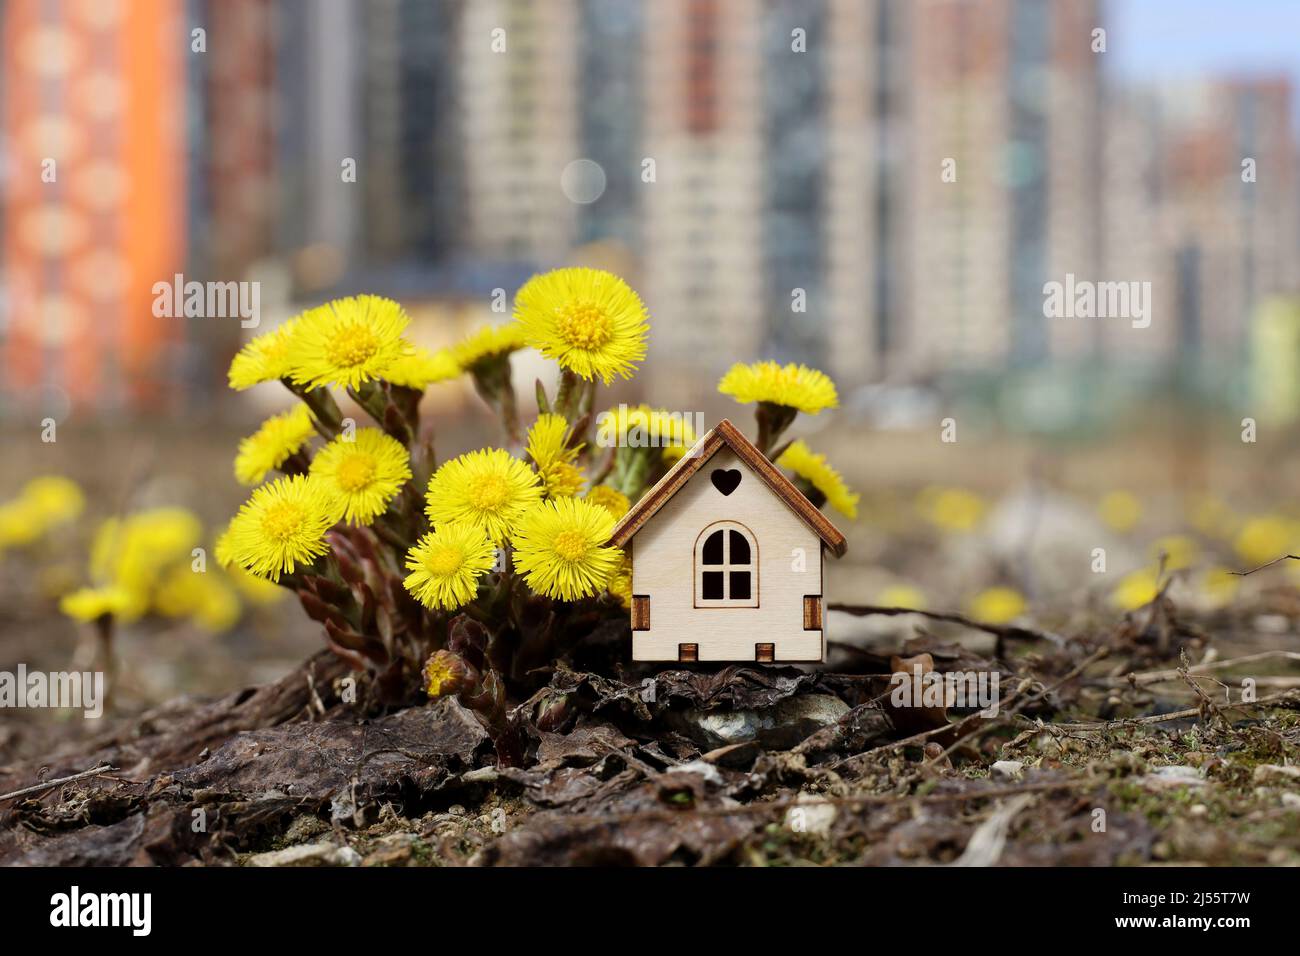 Holzhausmodell und Frühlingsblumen auf dem Hintergrund von Hochhäusern. Konzept von Landhaus, Immobilien Stockfoto